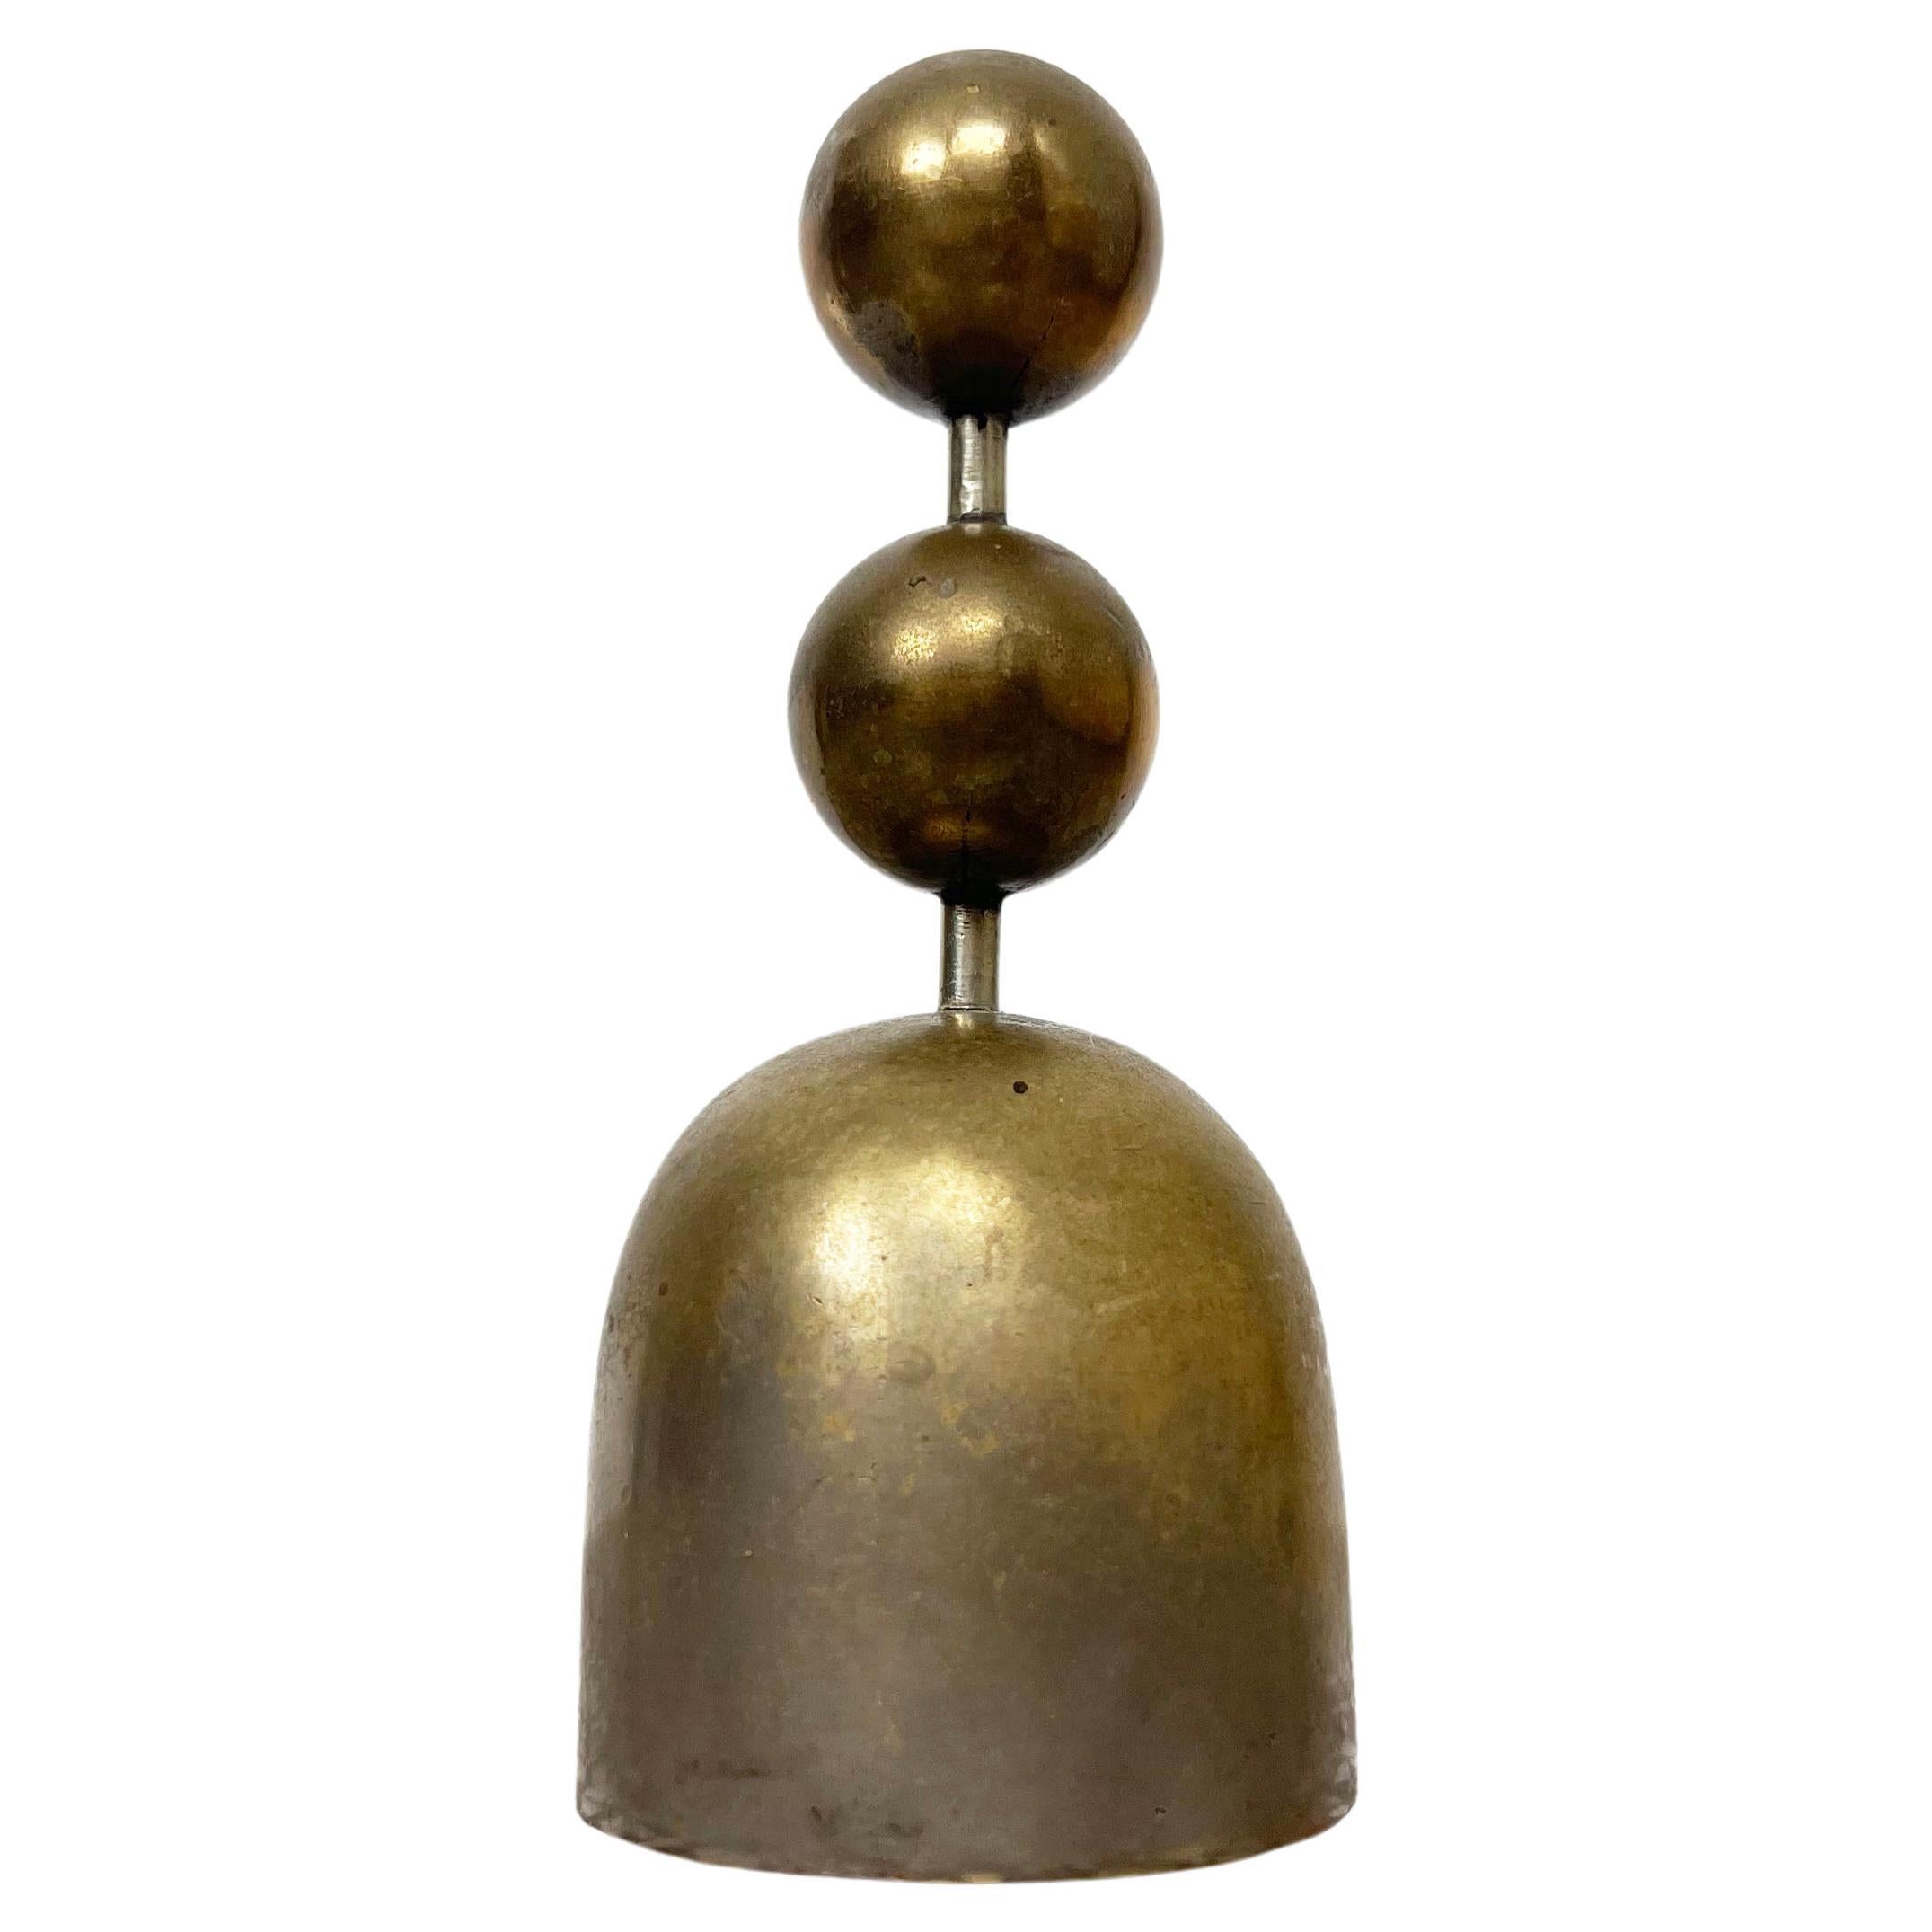 Brass Bell by Karl Hagenauer for Werkstatte Hagenauer